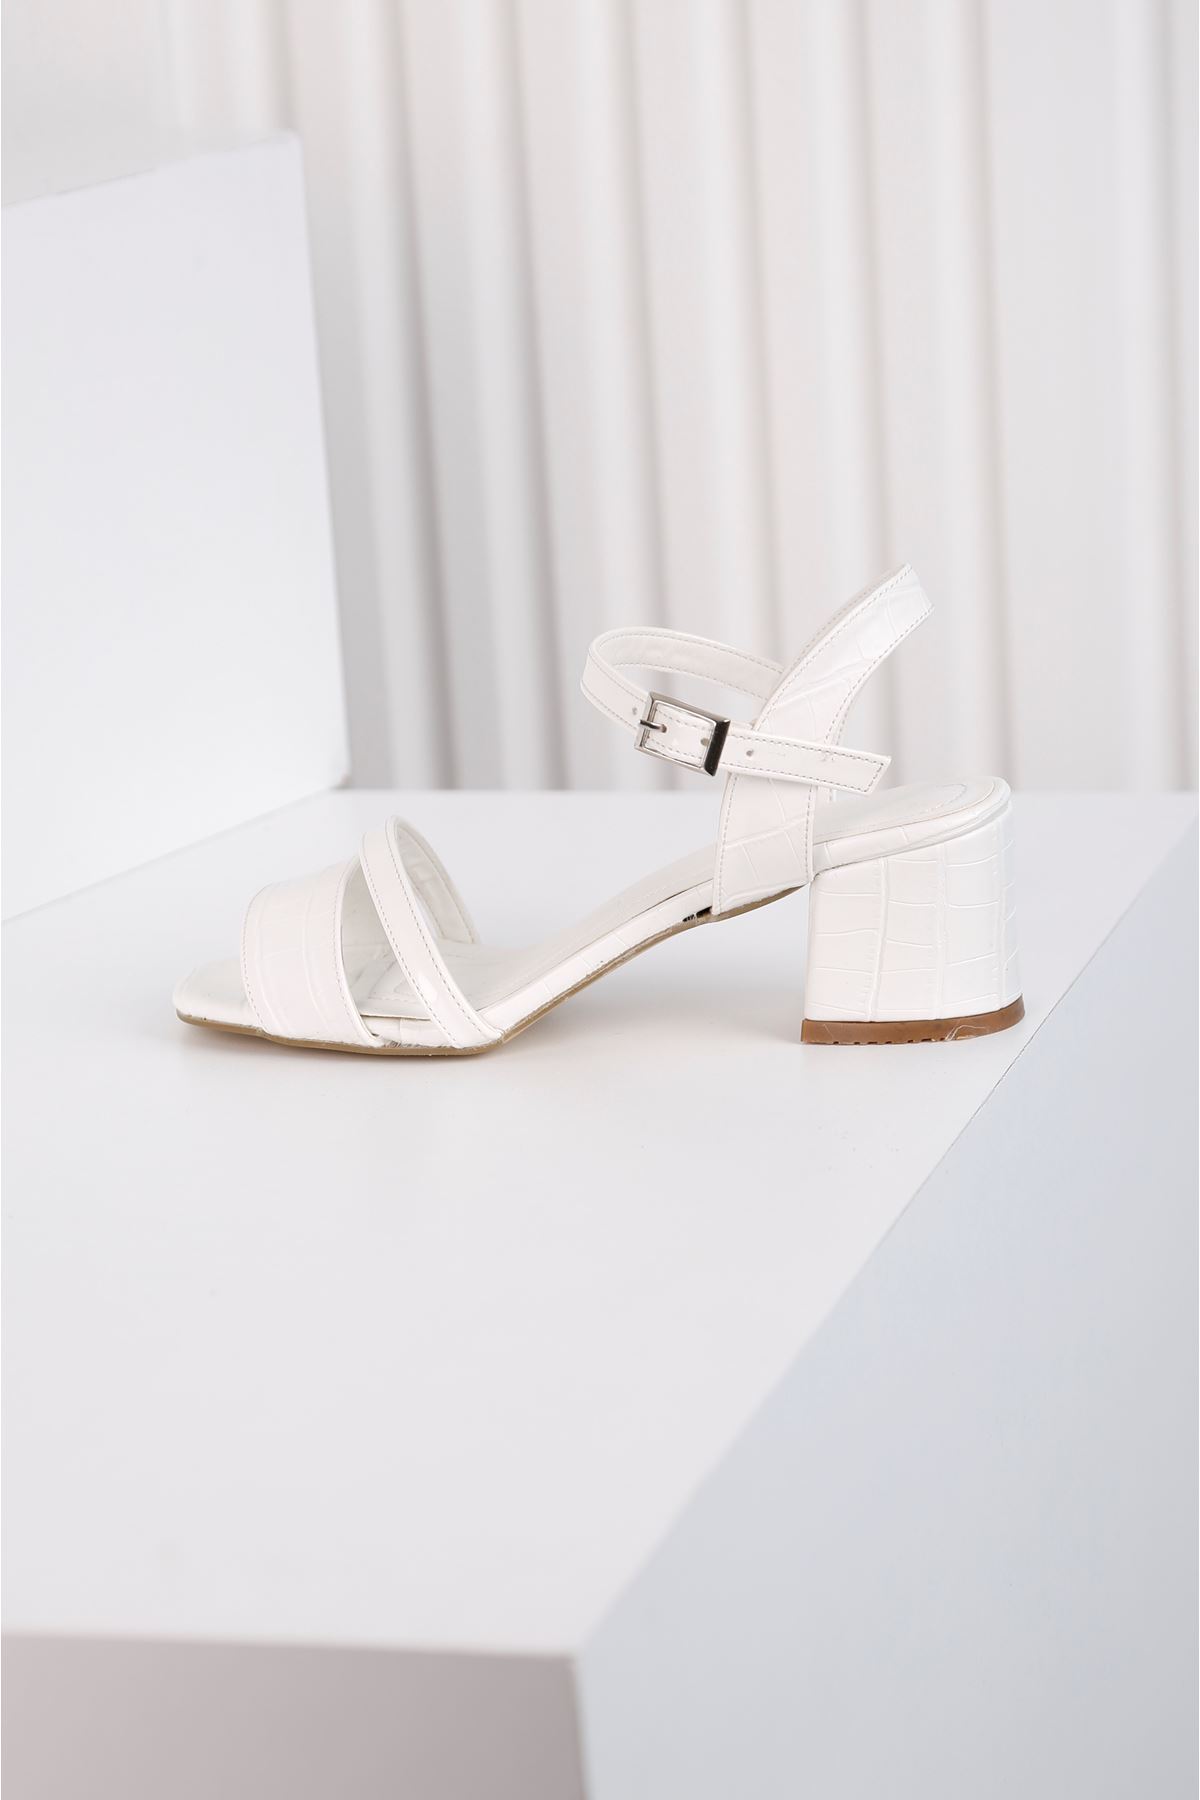 Flower Topuklu Beyaz Ayakkabı